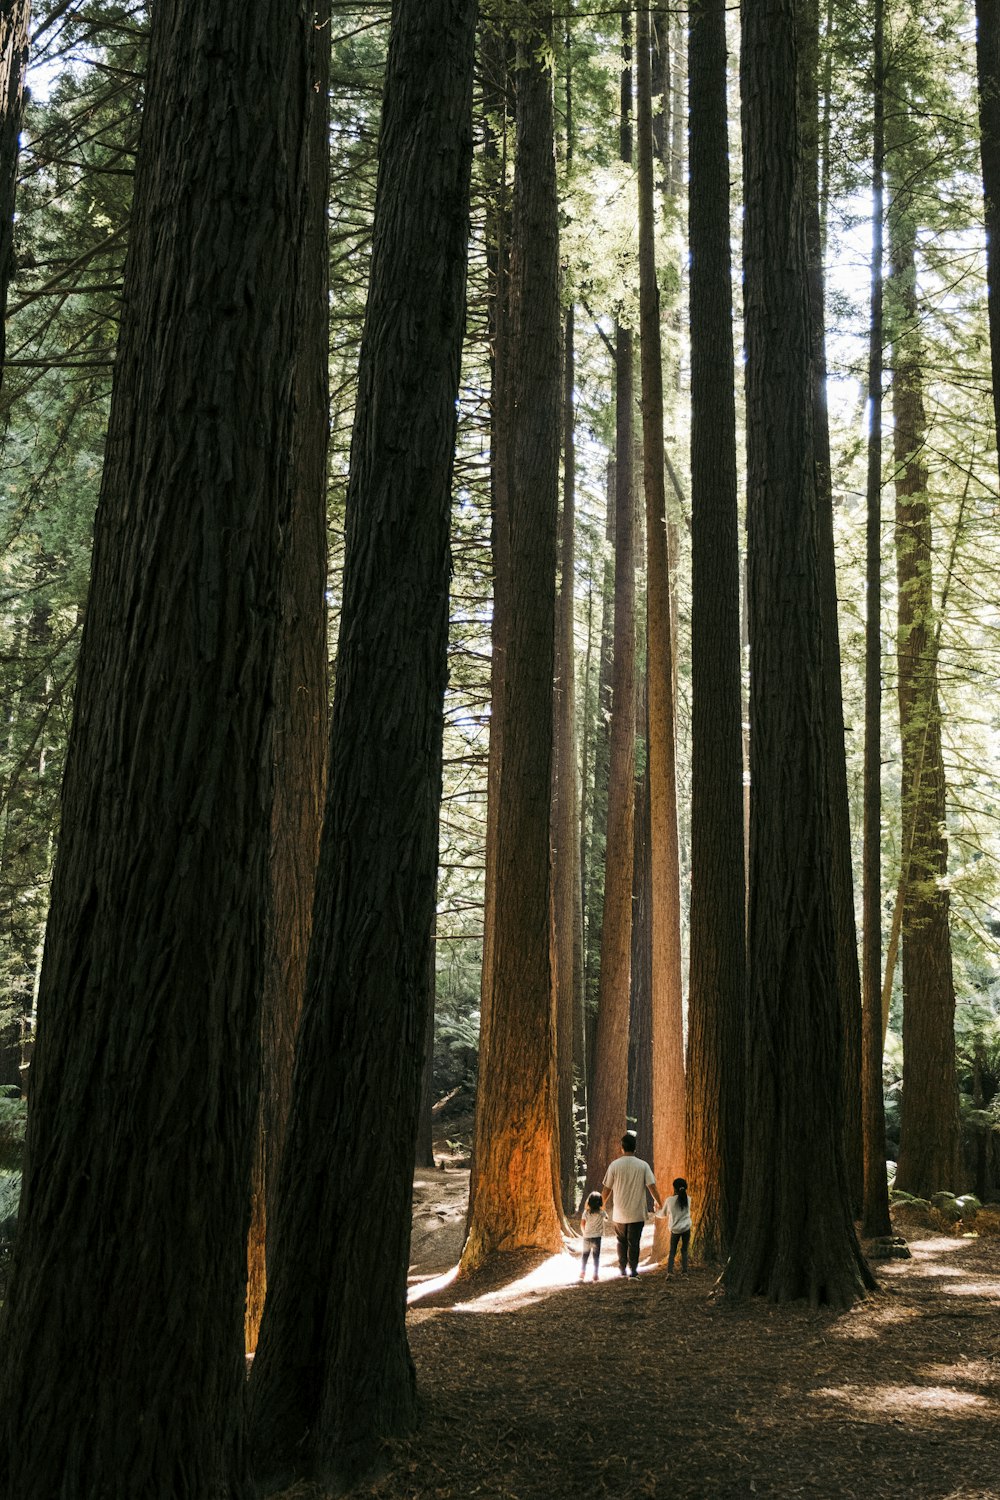 Un grupo de personas caminando por un bosque junto a árboles altos